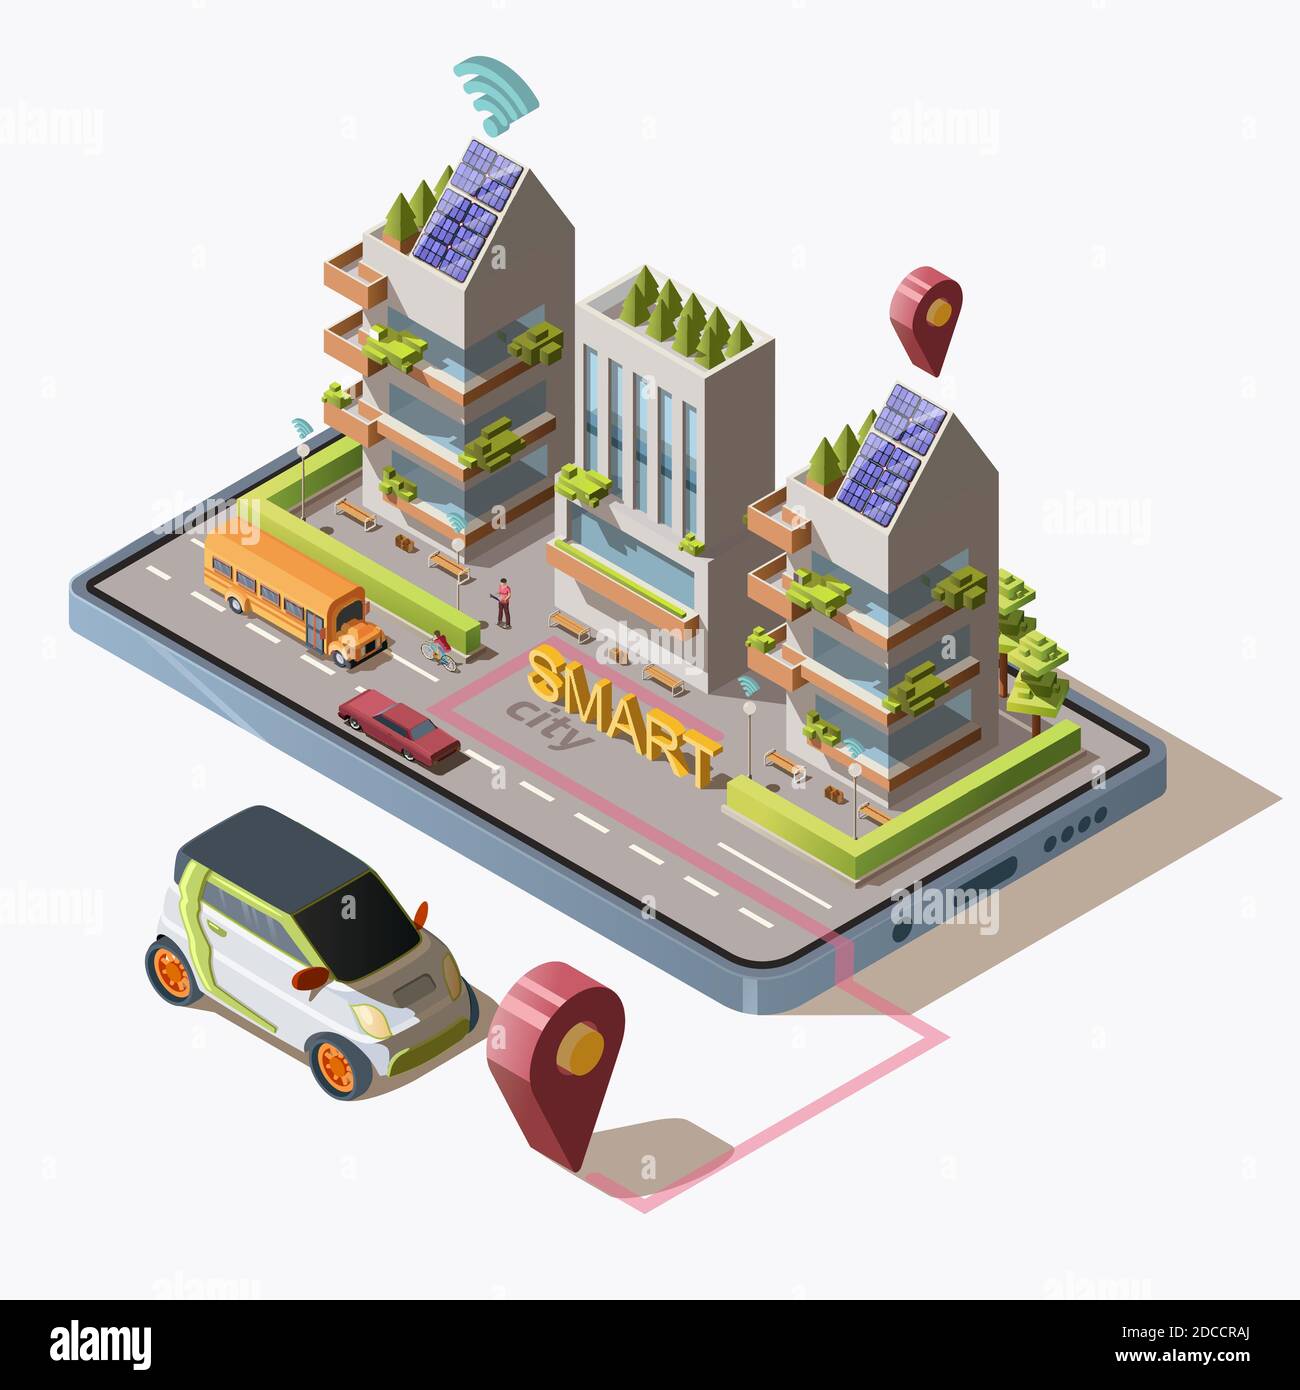 Città intelligente isometrica con auto, strada, persone, edifici ecologici moderni e trasporto su smartphone. Business center con pannelli solari sul tetto. illustrazione vettoriale 3d. Illustrazione Vettoriale